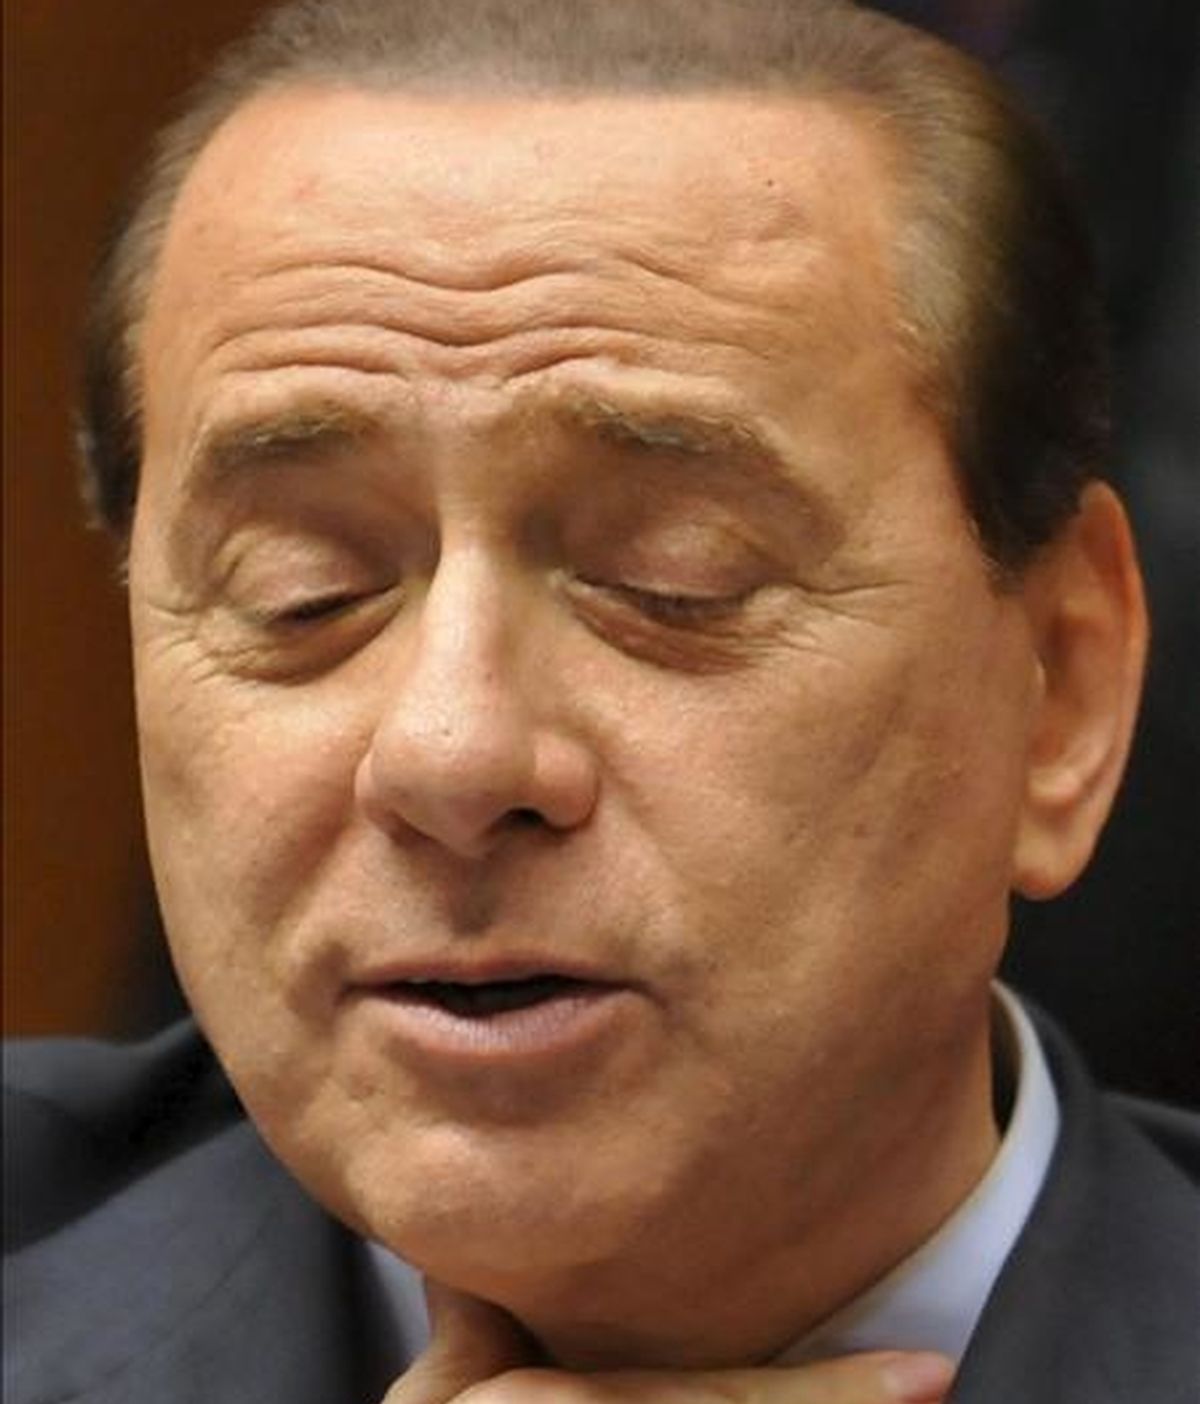 La Iglesia italiana no está dispuesta a "callar" ante a los escándalos que afectan a Silvio Berlusconi (en la foto) y exige al primer ministro que dé explicaciones y "esclarezca con hechos y no sólo de palabra" la situación, ha afirmado el obispo de Lanciano-Ortona, Carlo Ghidelli. EFE/Archivo